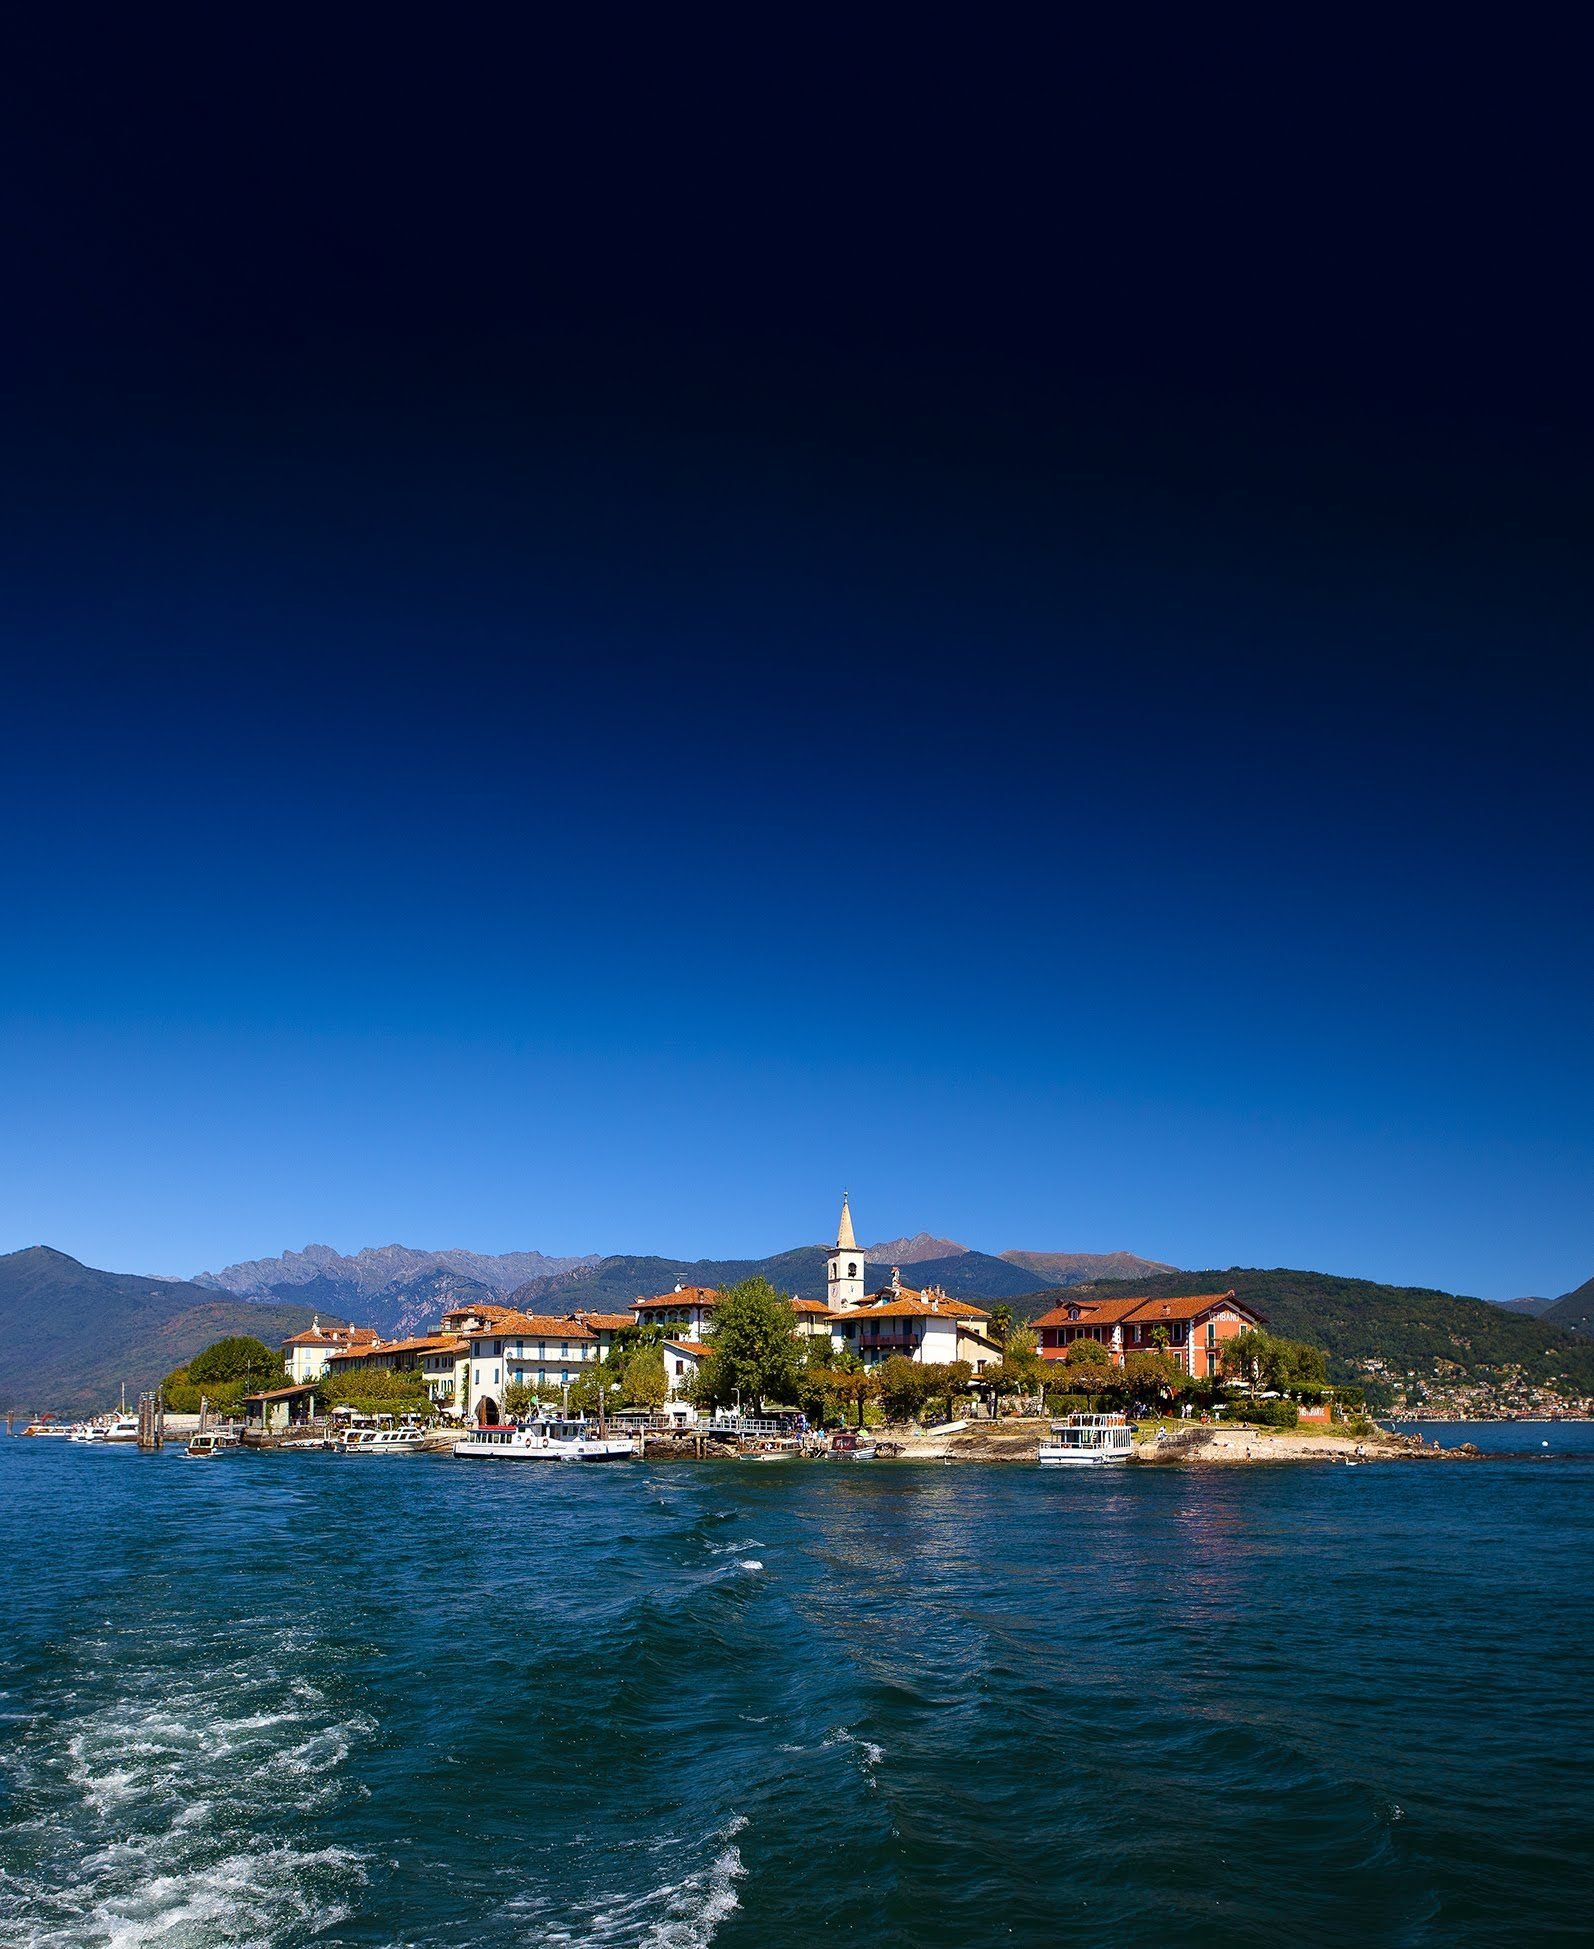 Reisebericht Lago Maggiore